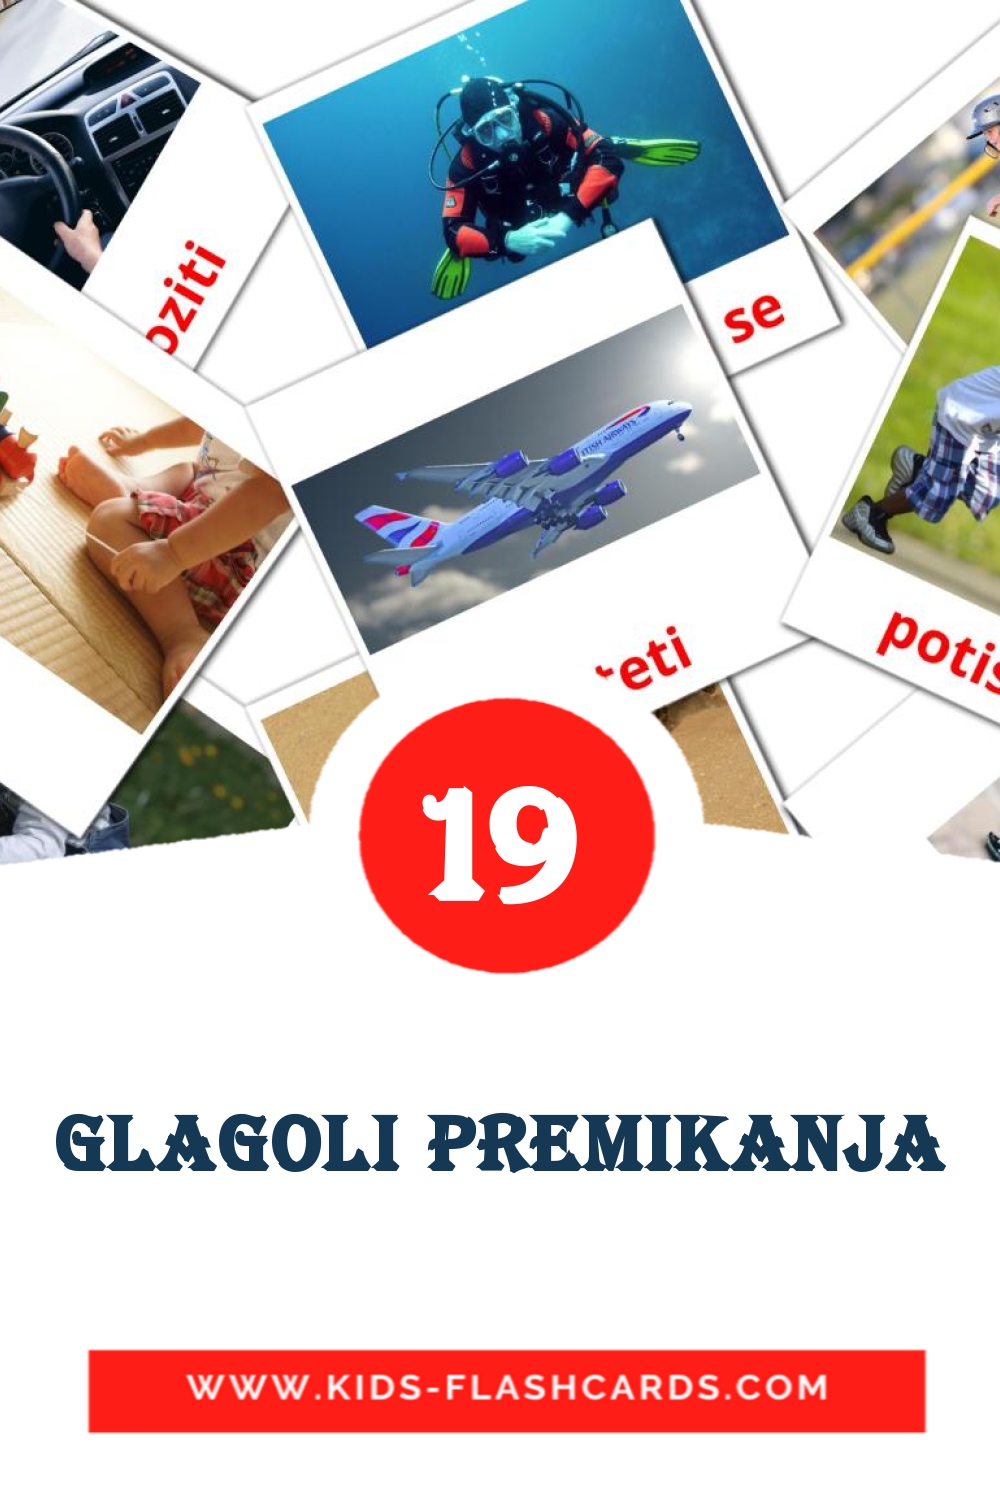 19 Glagoli premikanja Bildkarten für den Kindergarten auf Slowenisch